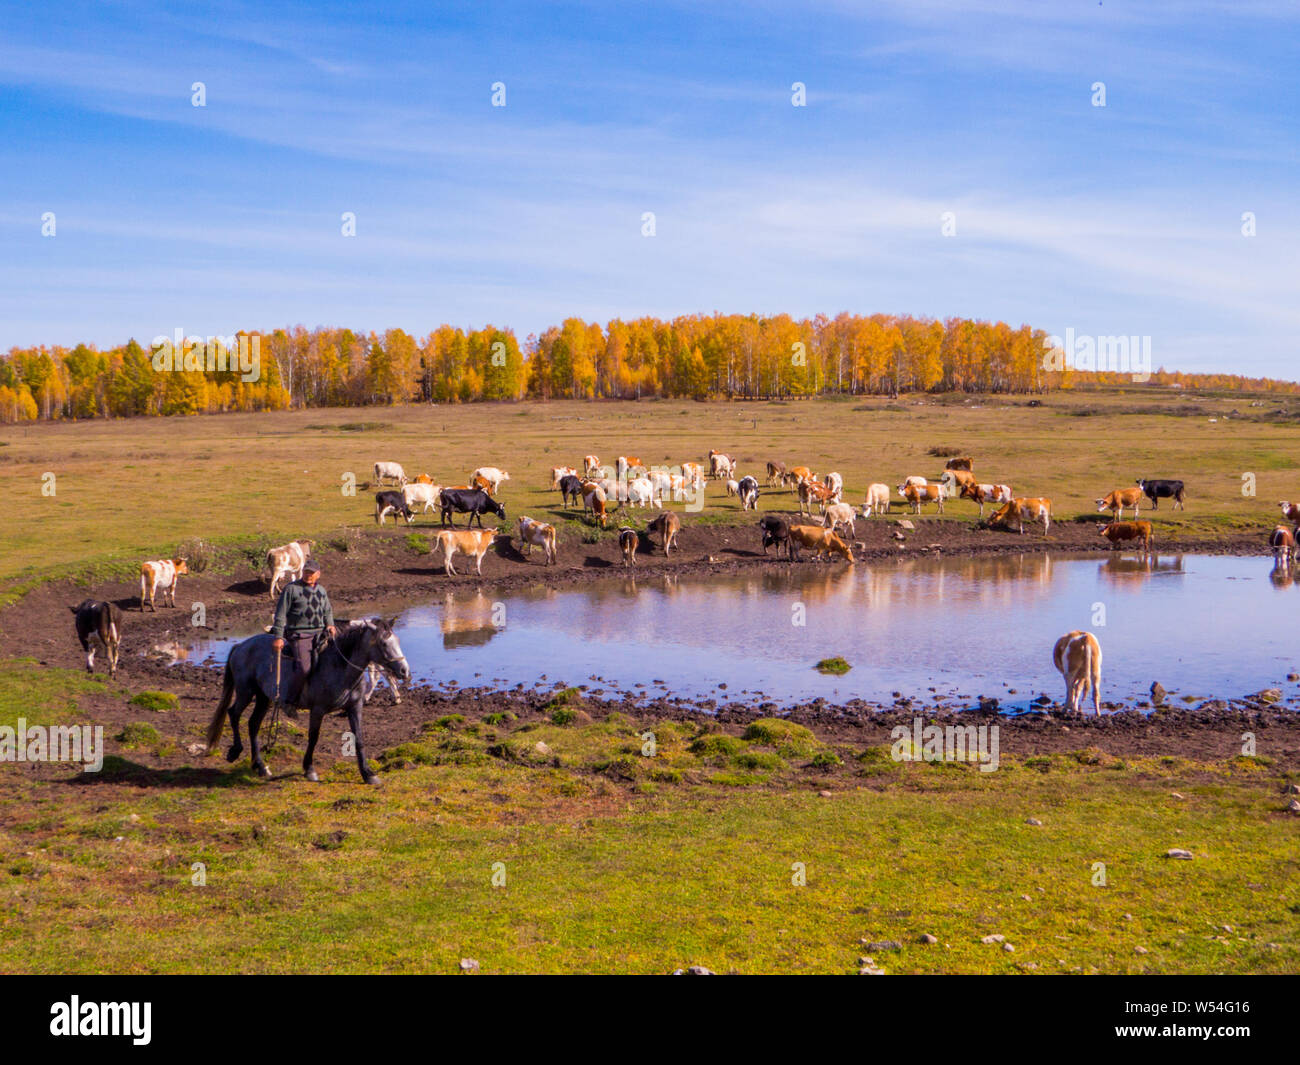 Regione di Irkutsk, Russia - 24 settembre 2018: mucche nei pressi di un laghetto non lontano dal lago Baikal. Foto Stock